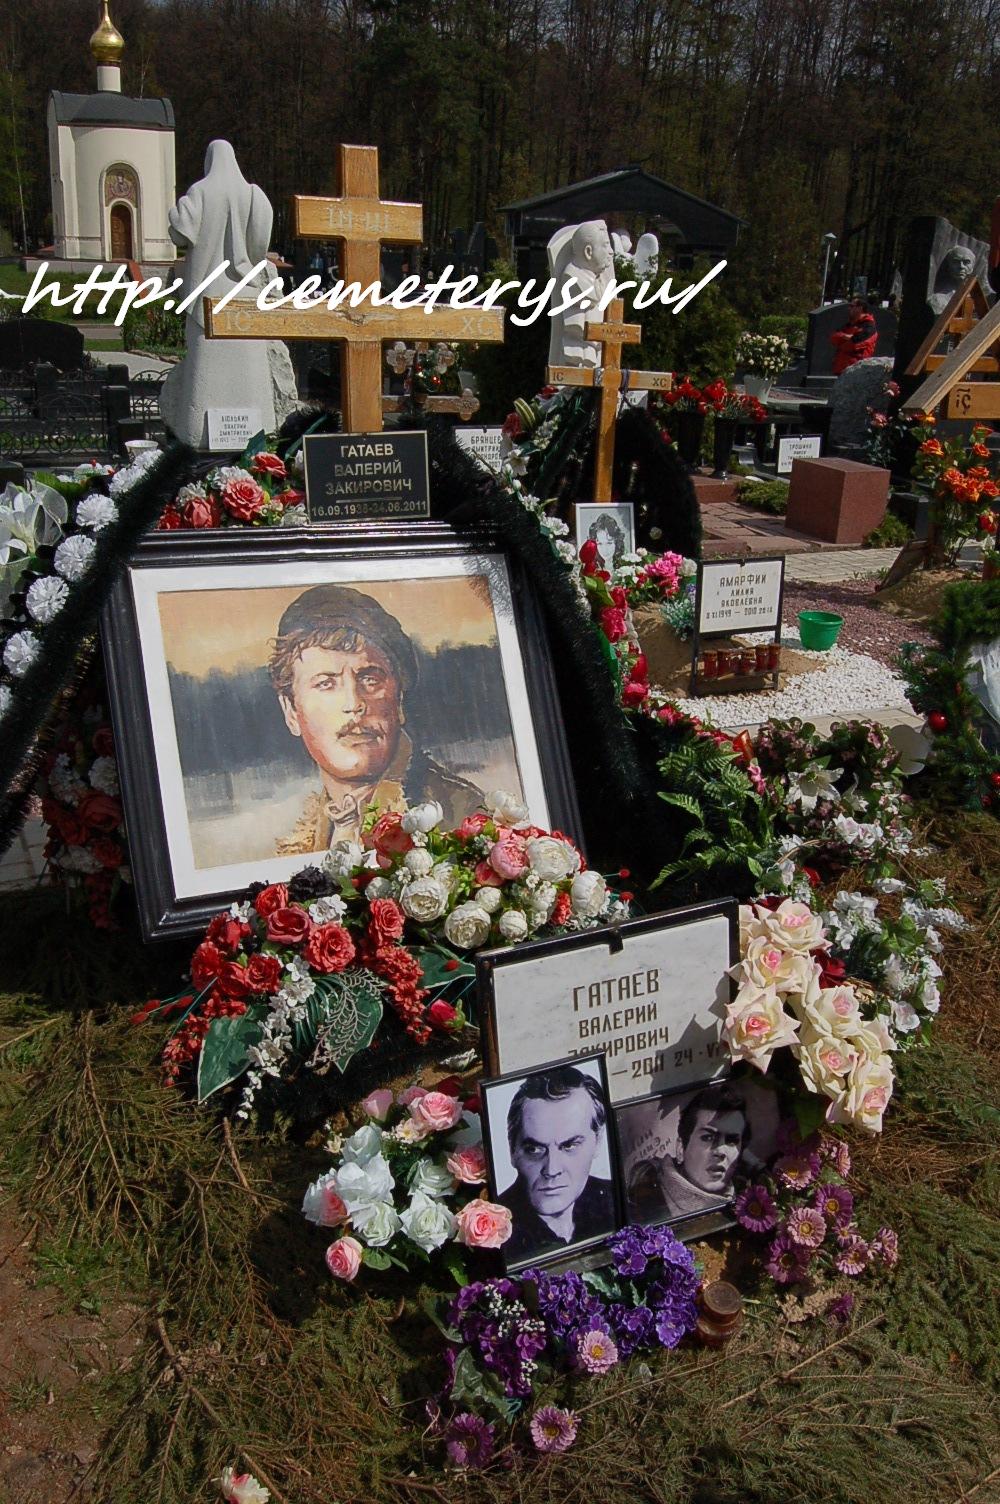 могила Валерия Гатаева на Троекуровском кладбище в Москве (вид могилы до установки памятника)( фото Дмитрия Кондратьева)